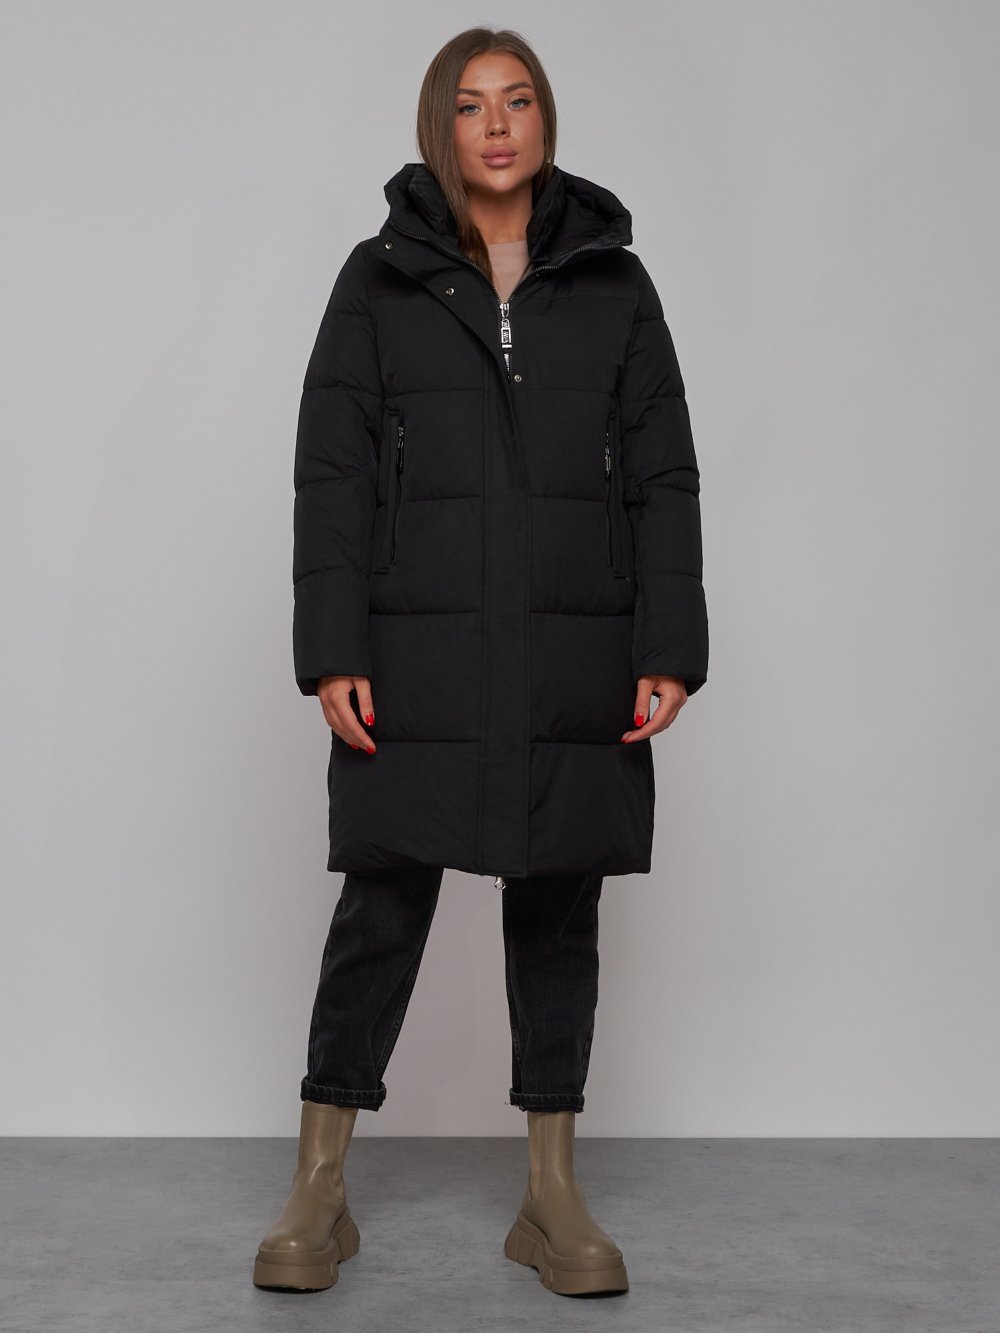 Пальто утепленное молодежное зимнее женское черного цвета 52322Ch